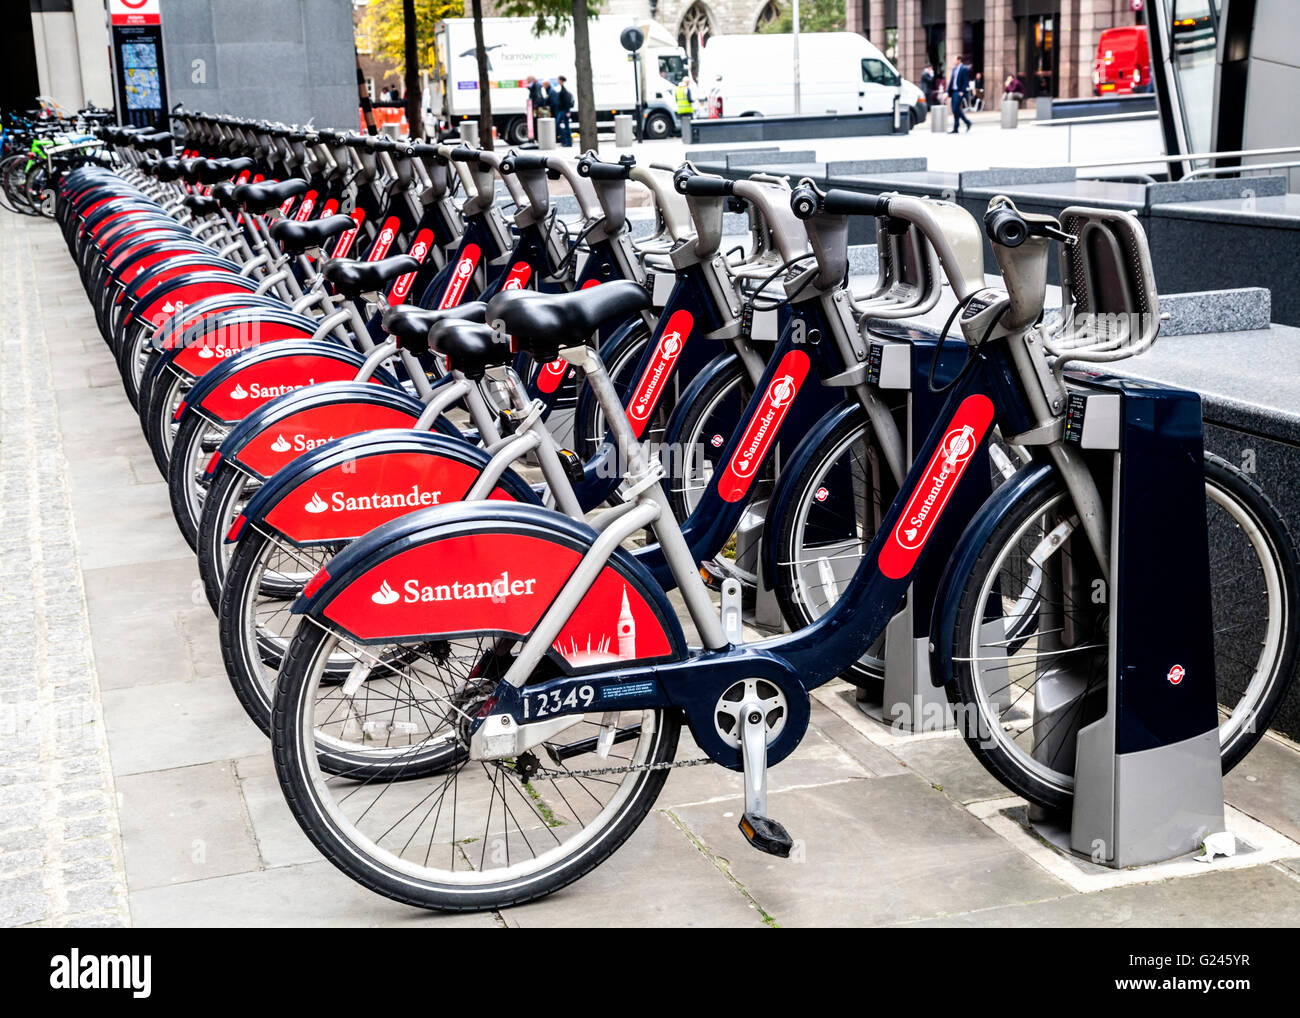 Location de vélos Boris dans une station d'accueil, Londres, Angleterre. Banque D'Images